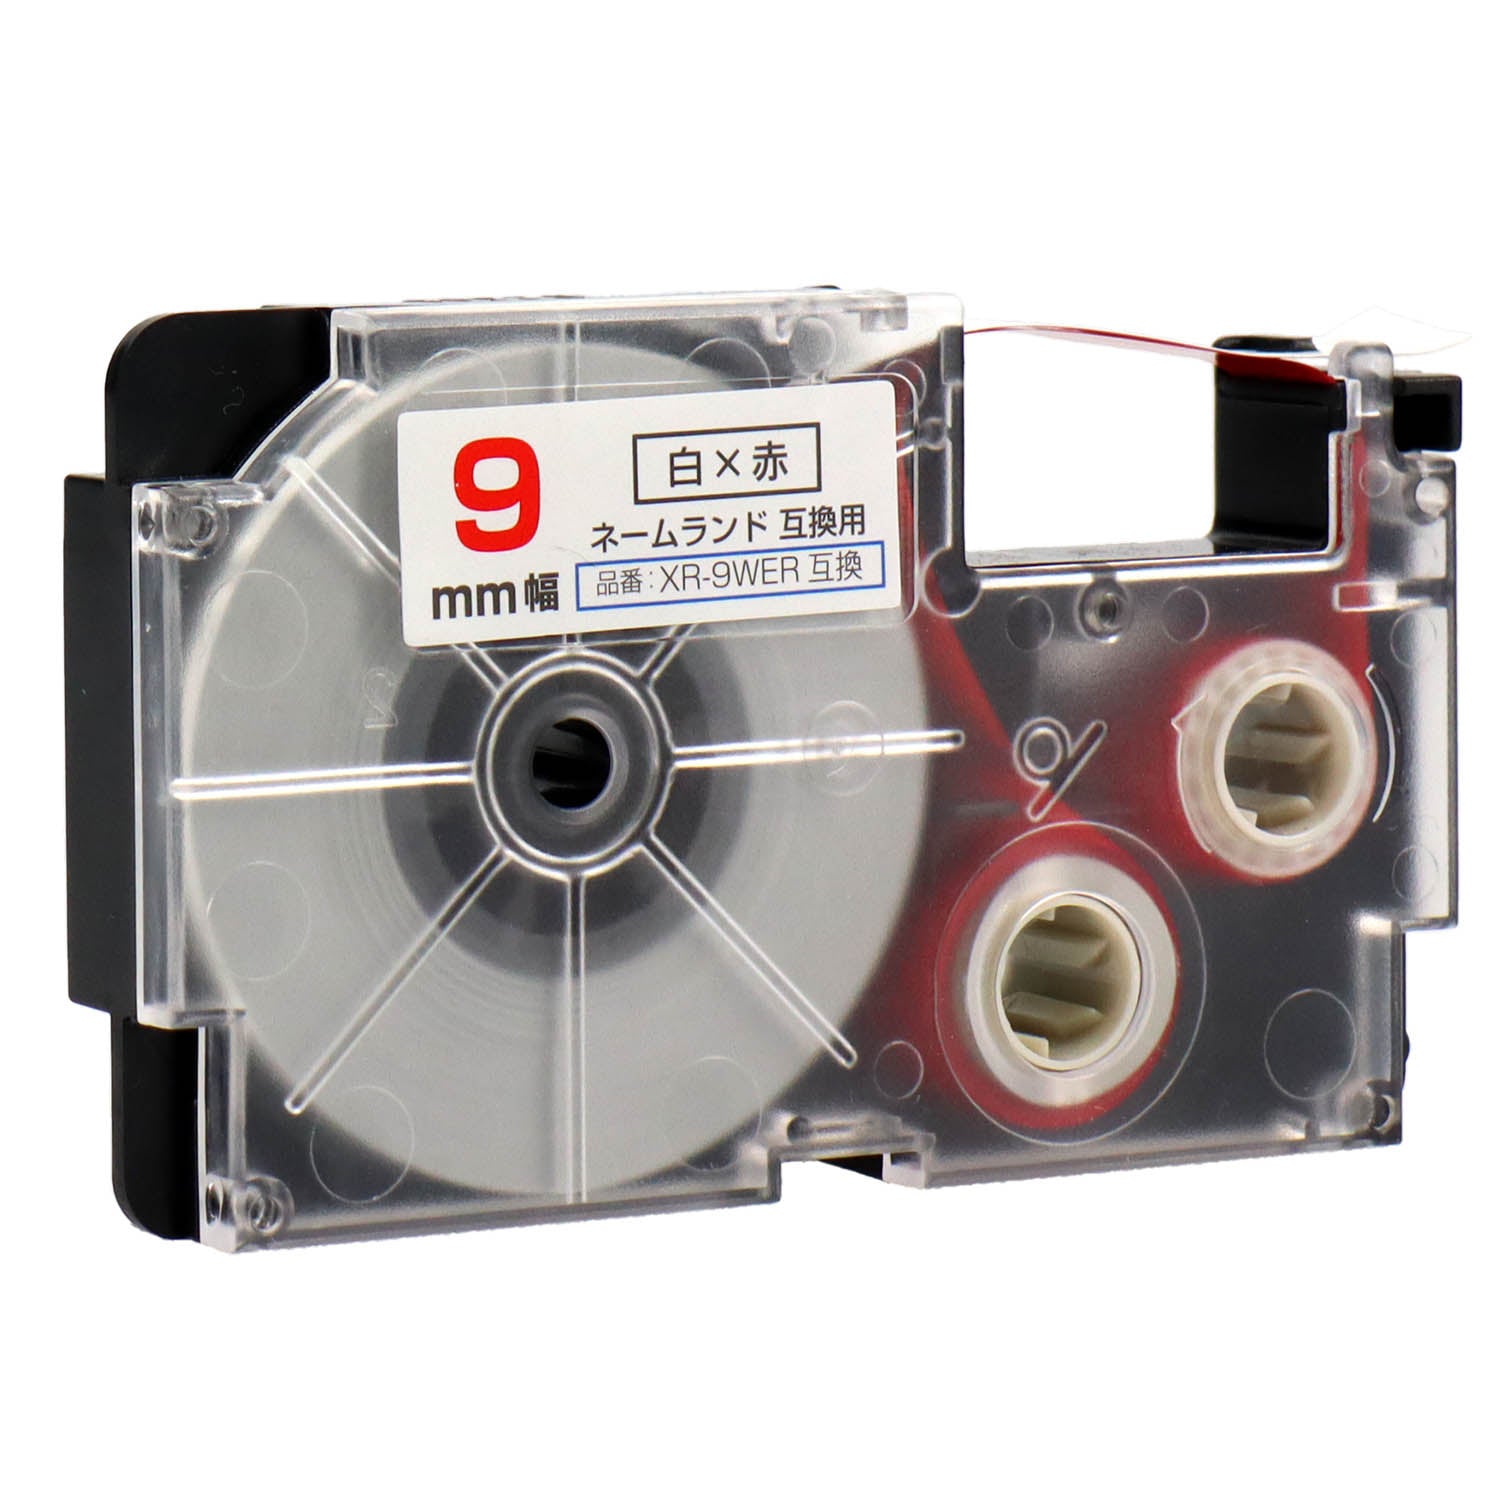 ネームランド用互換テープカートリッジ 白×赤文字 9mm